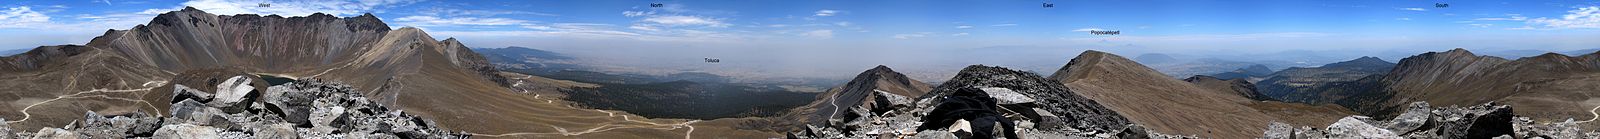 Panoramatický pohled z kráteru, 120 km na východ je Popocatépetl